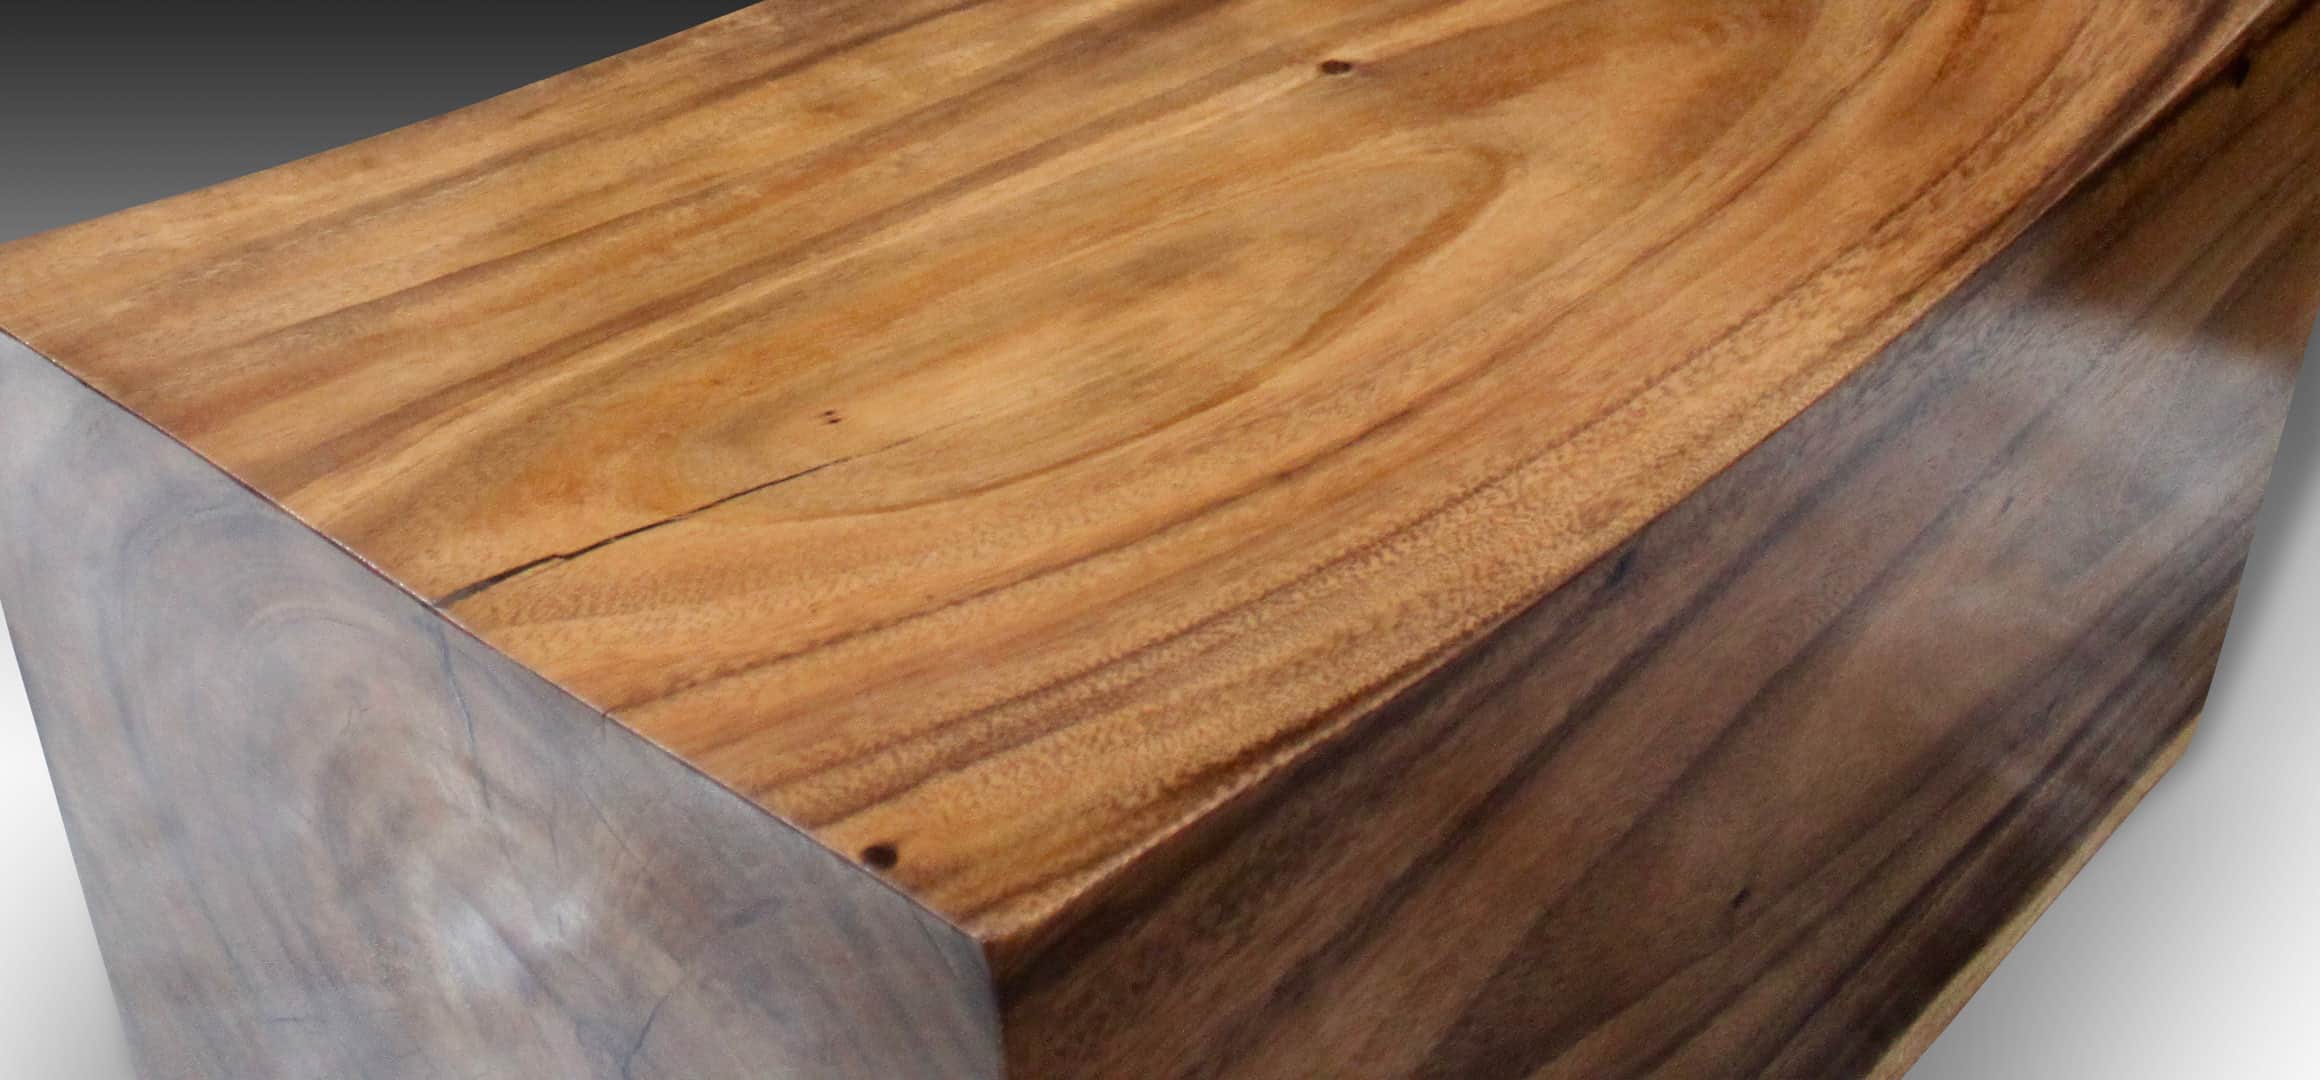 Log suar wood bench close up view